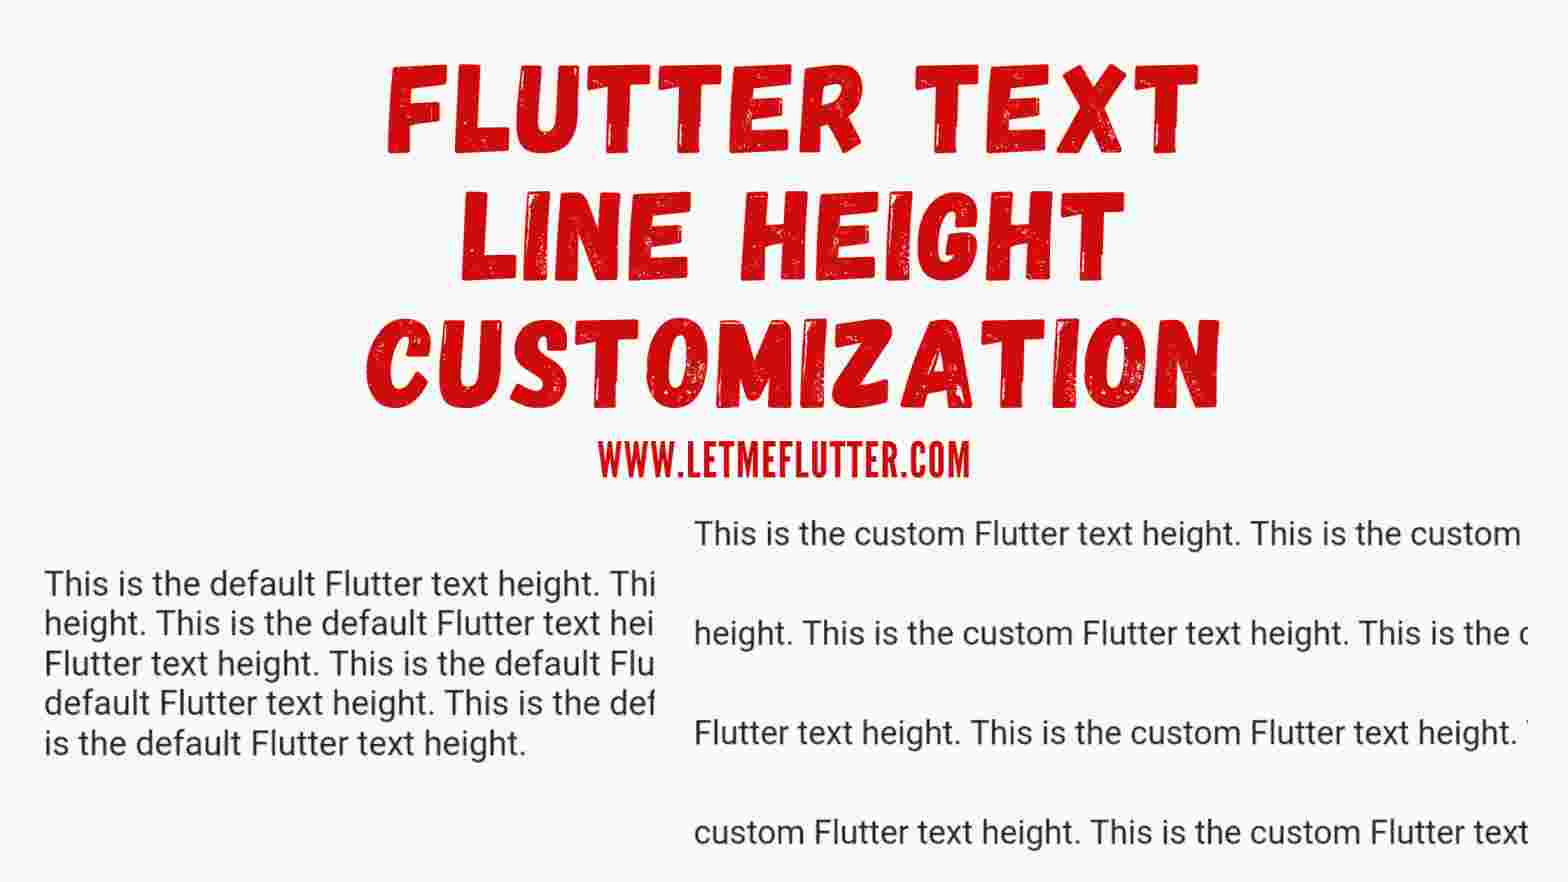 flutter text line height